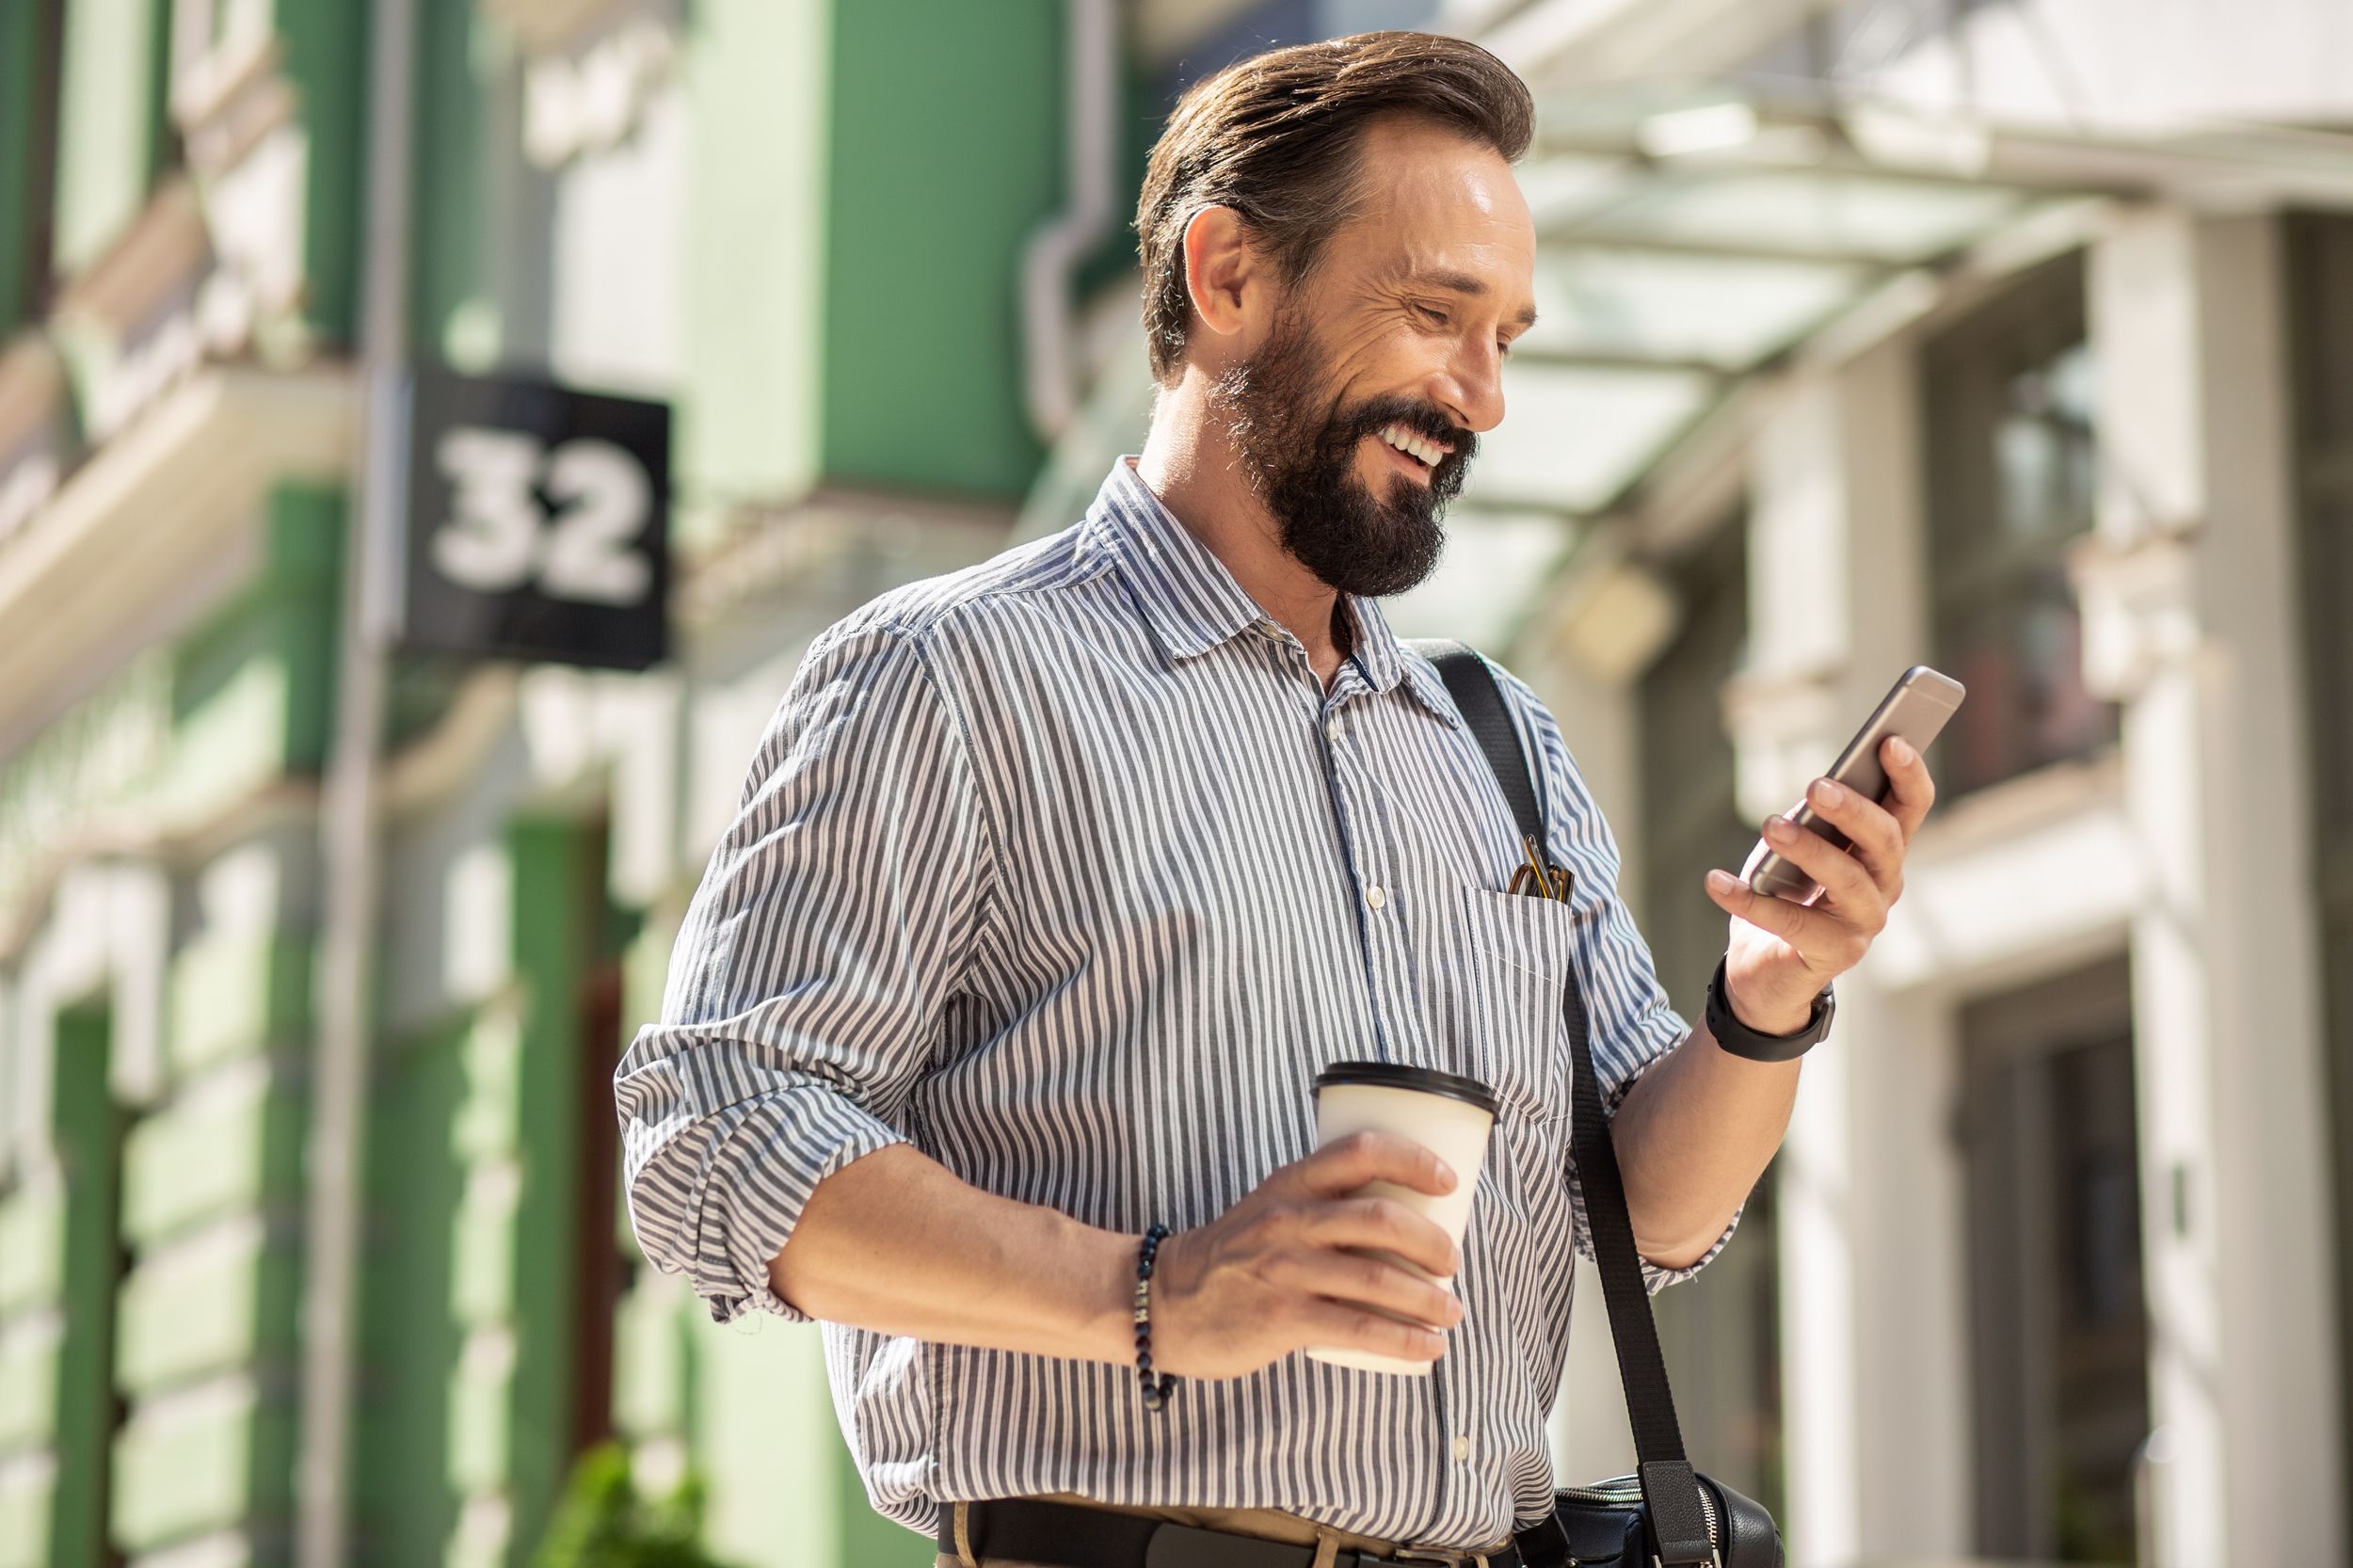 Man walking while smiling at phone